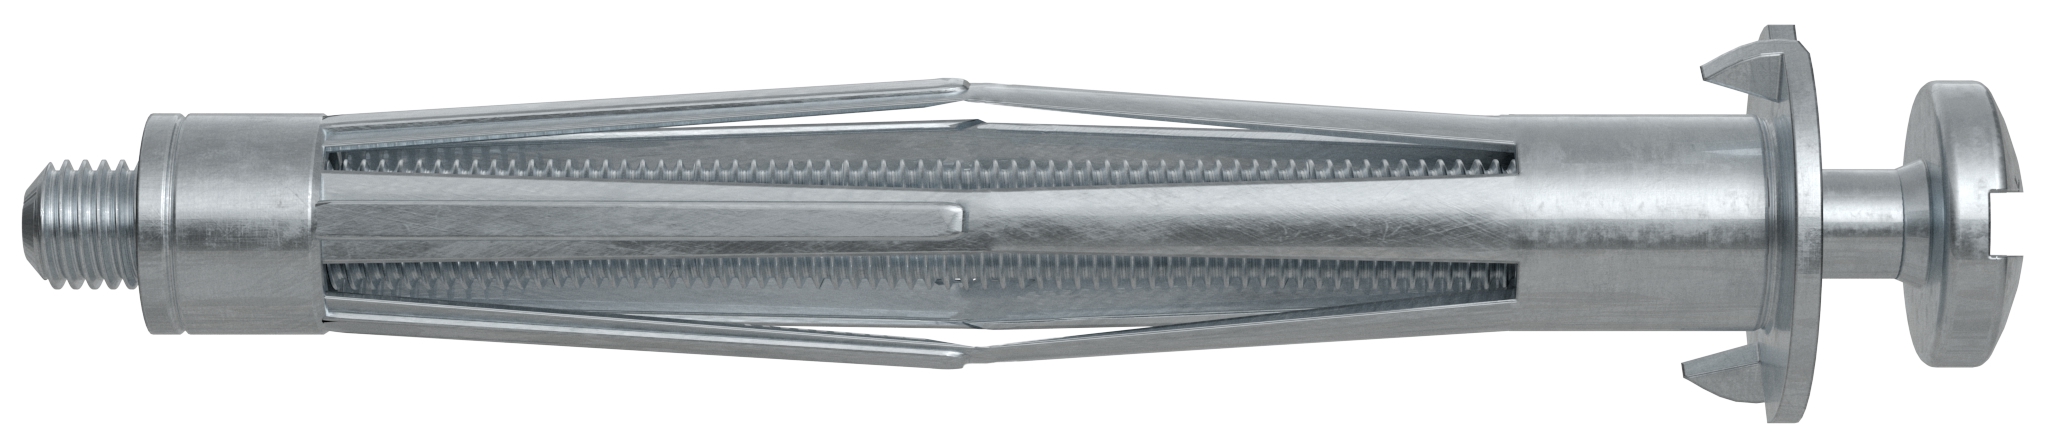 Fischer HM 4 x 45 S. Der vielseitige Hohlraumdübel aus Metall mit metrischer Schraube.